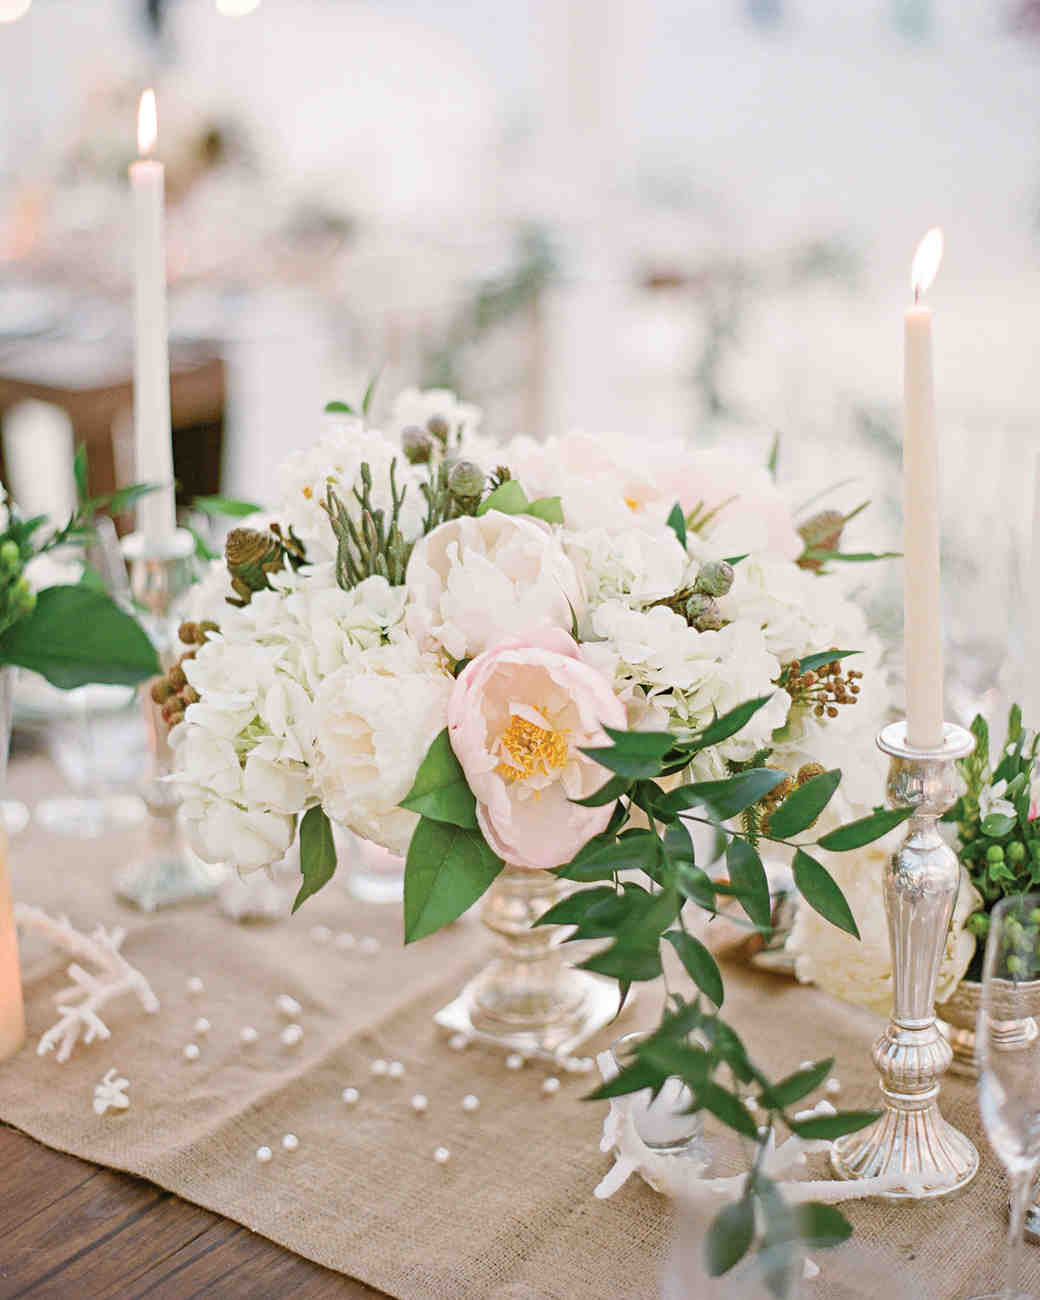 White Flower Wedding Centerpieces
 The Prettiest Peony Wedding Centerpieces